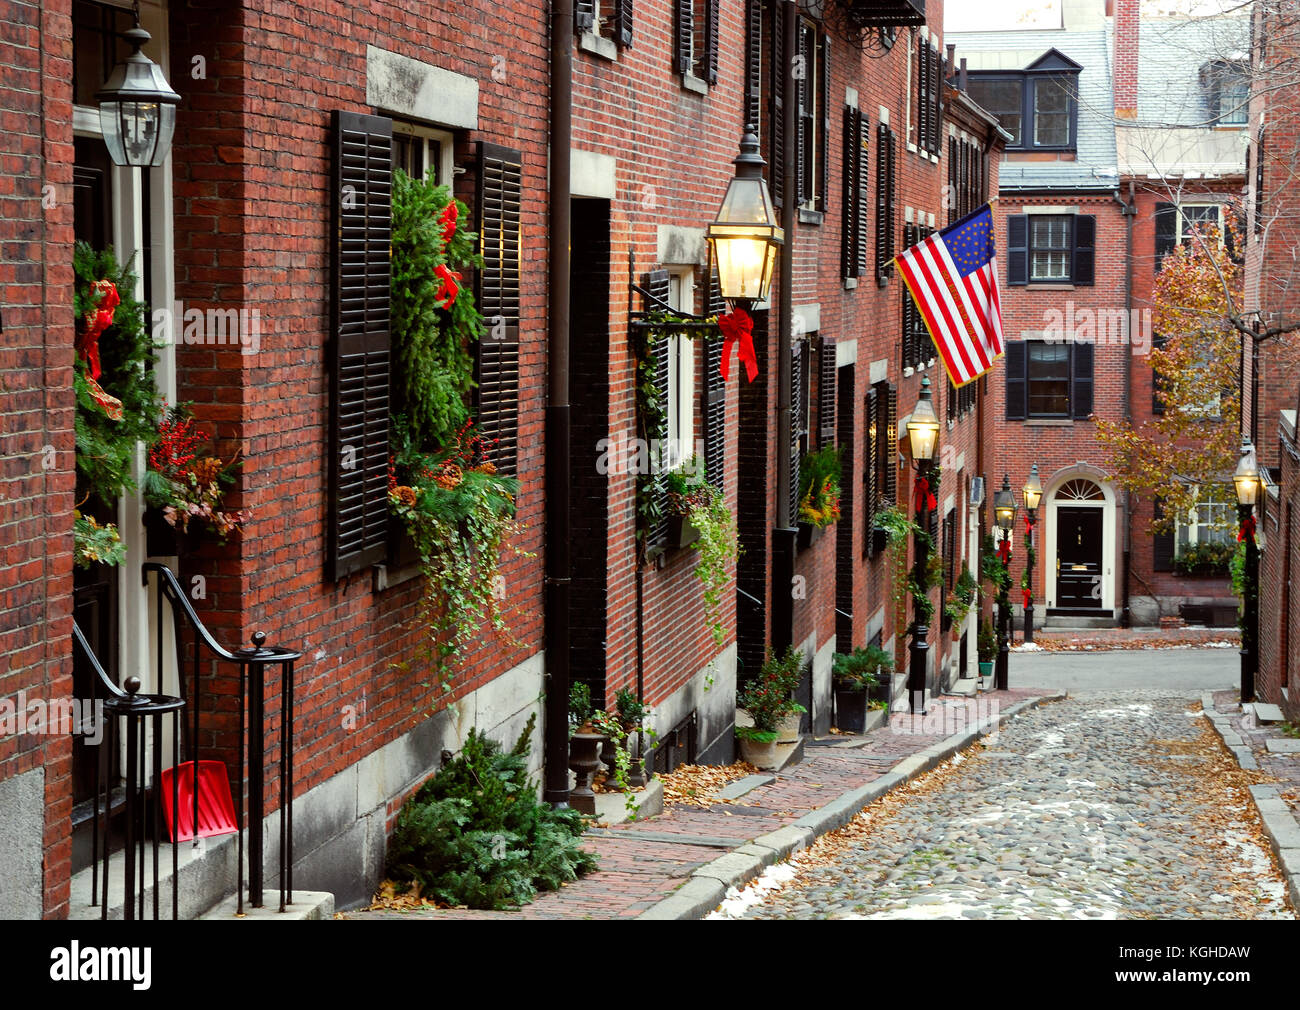 Historische acorn Street in Beacon Hill, Boston. Weihnachtsdekorationen, historischen american flag, Kopfsteinpflaster Straßenfertiger, Straßenlaternen. Stockfoto